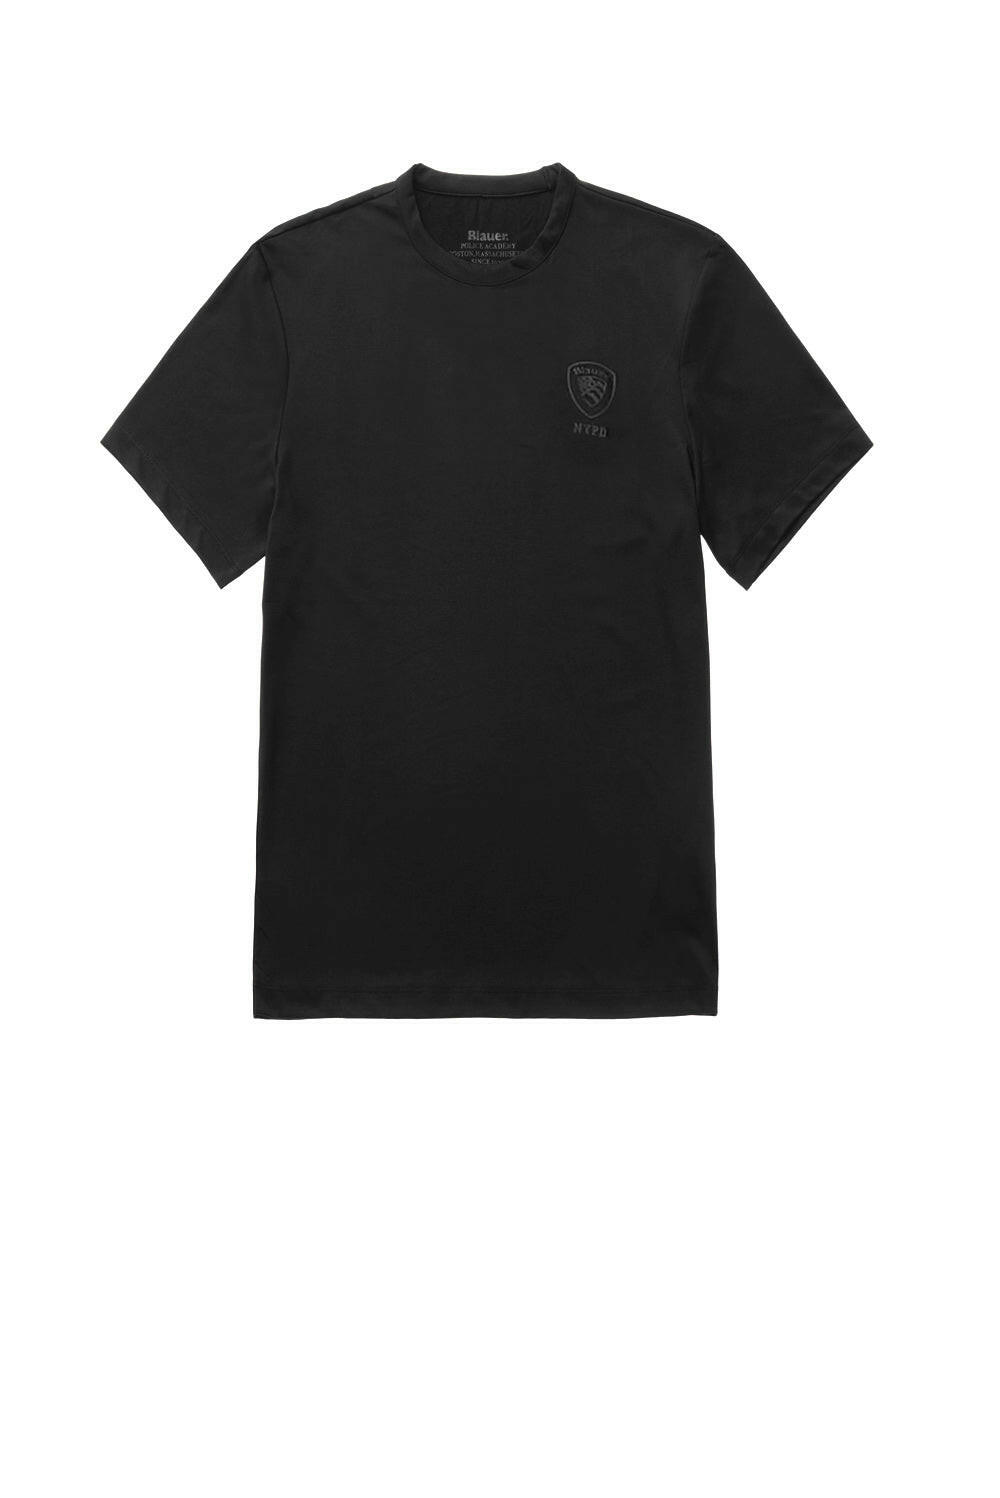  Blauer T-shirt Logo Black Uomo - 1